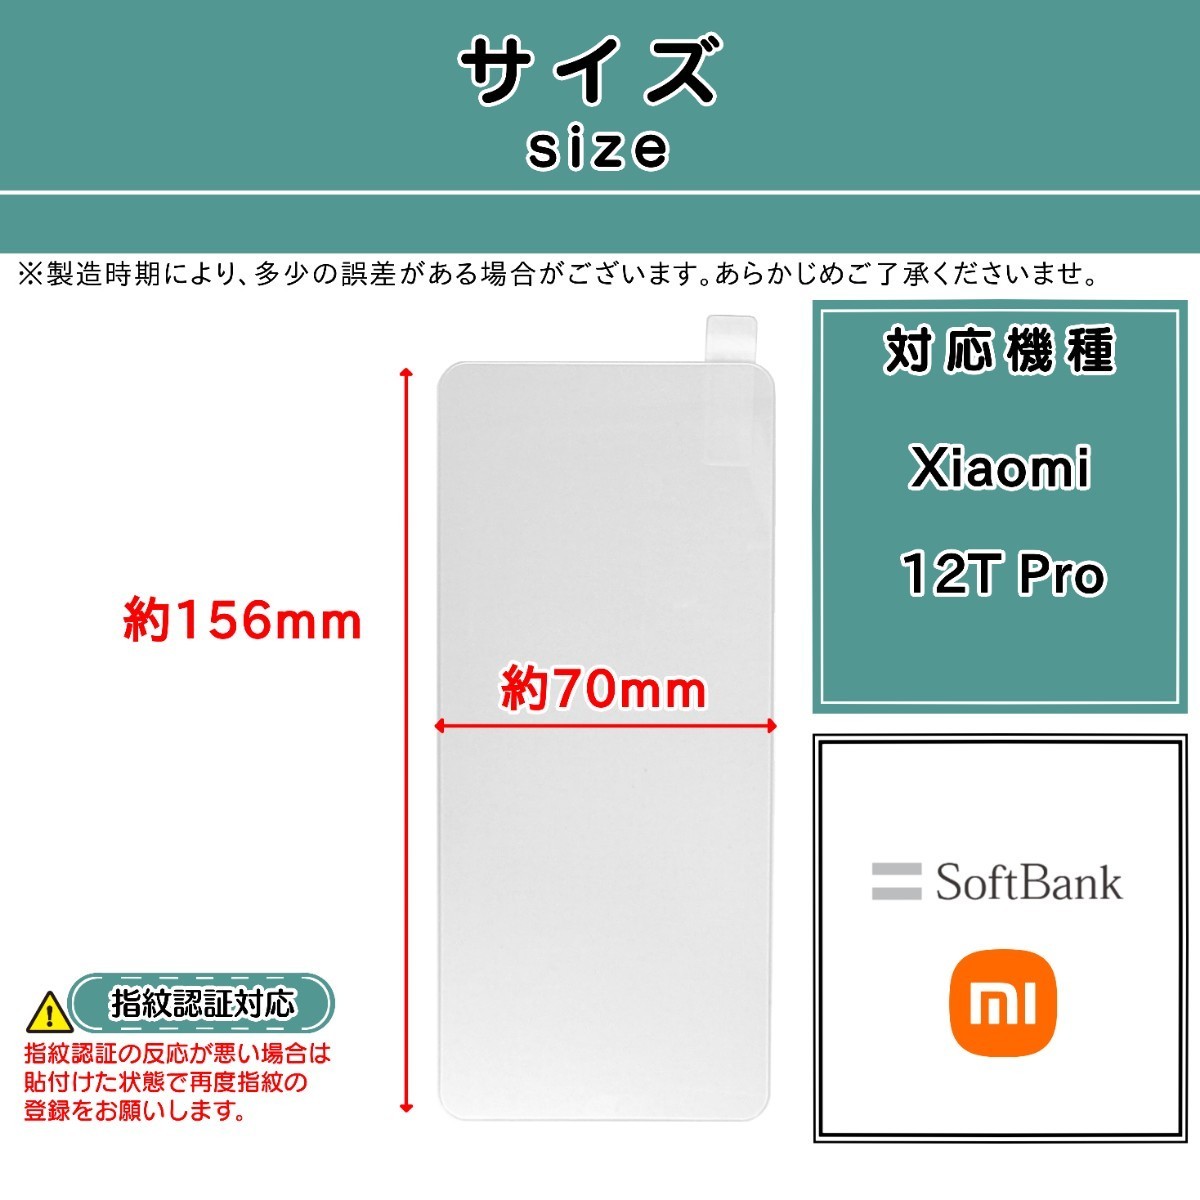 【新品】Xiaomi 12T Pro ガラスフィルム シャオミ プロ SoftBank ソフトバンク _画像2